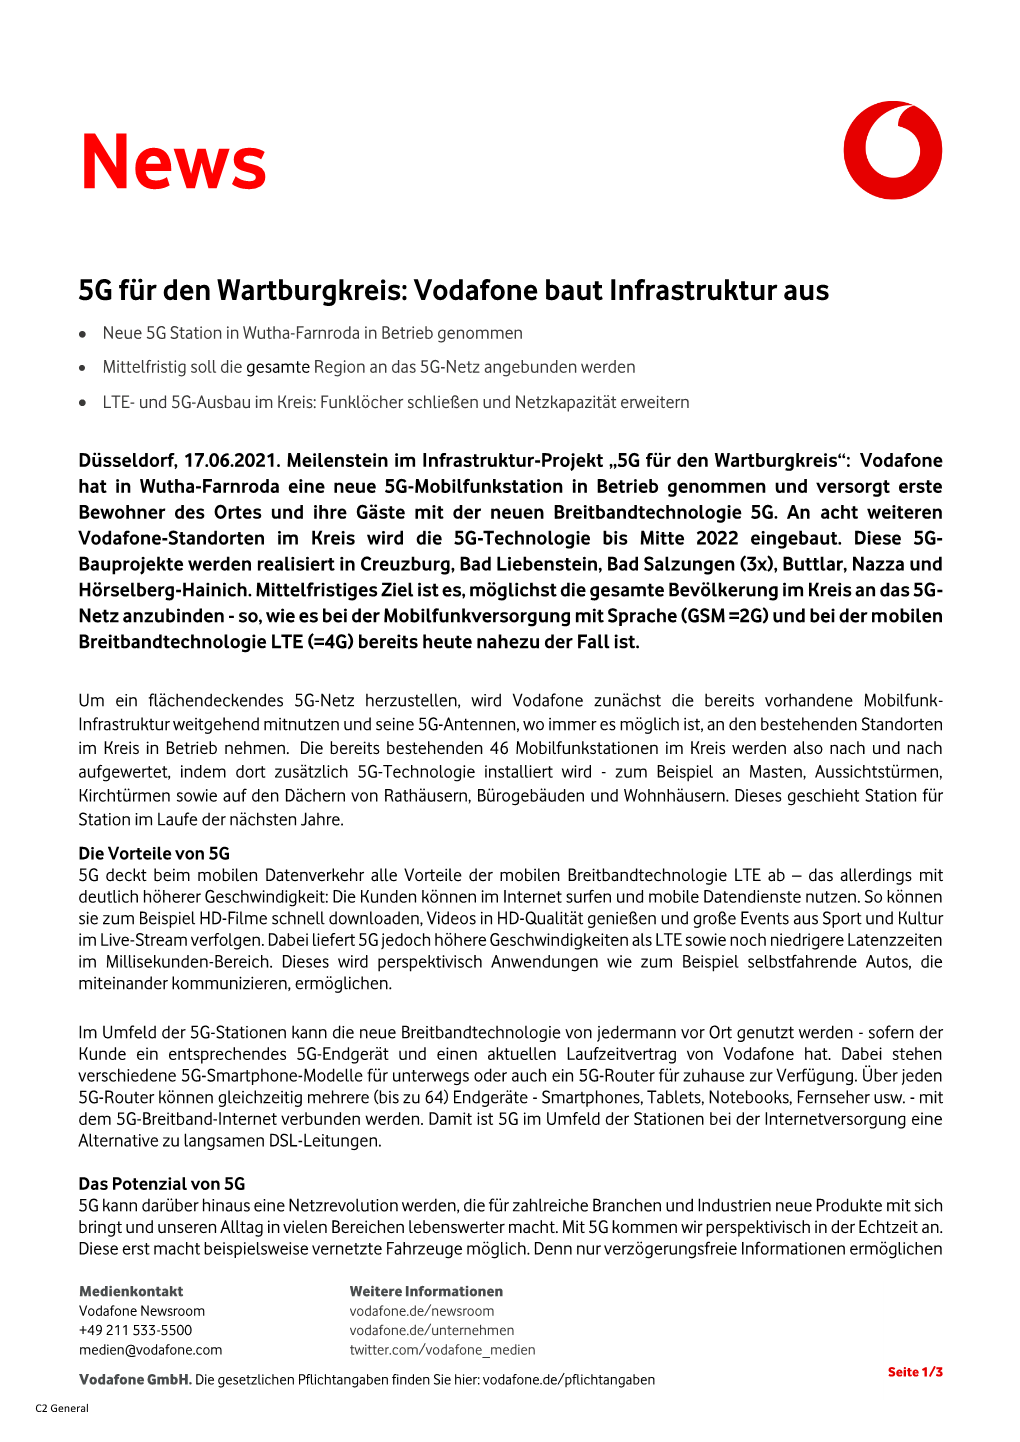 5G Für Den Wartburgk~Rastruktur Aus .Pdf